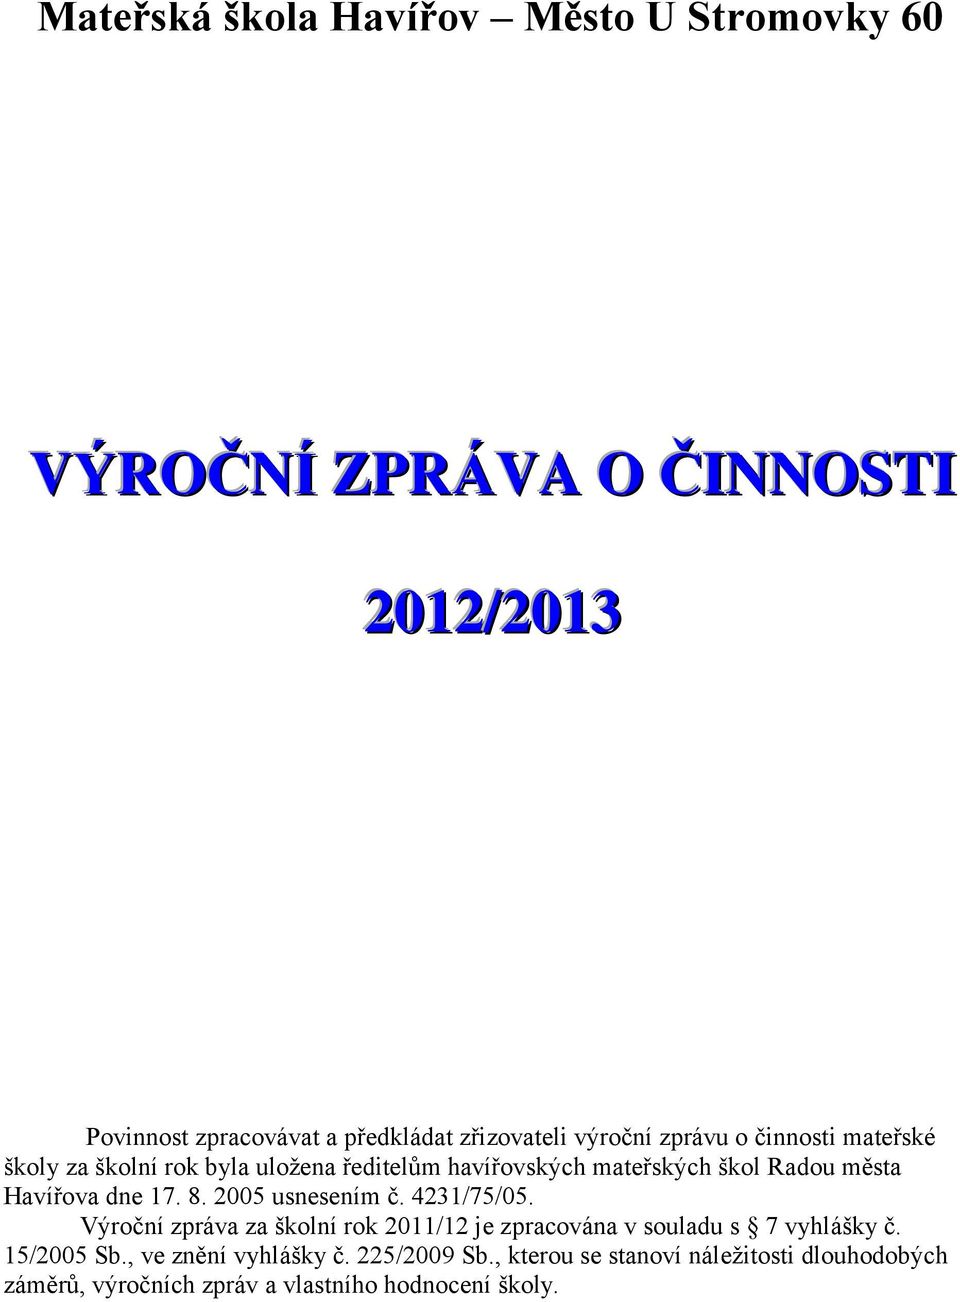 dne 17. 8. 2005 usnesením č. 4231/75/05. Výroční zpráva za školní rok 2011/12 je zpracována v souladu s 7 vyhlášky č. 15/2005 Sb.